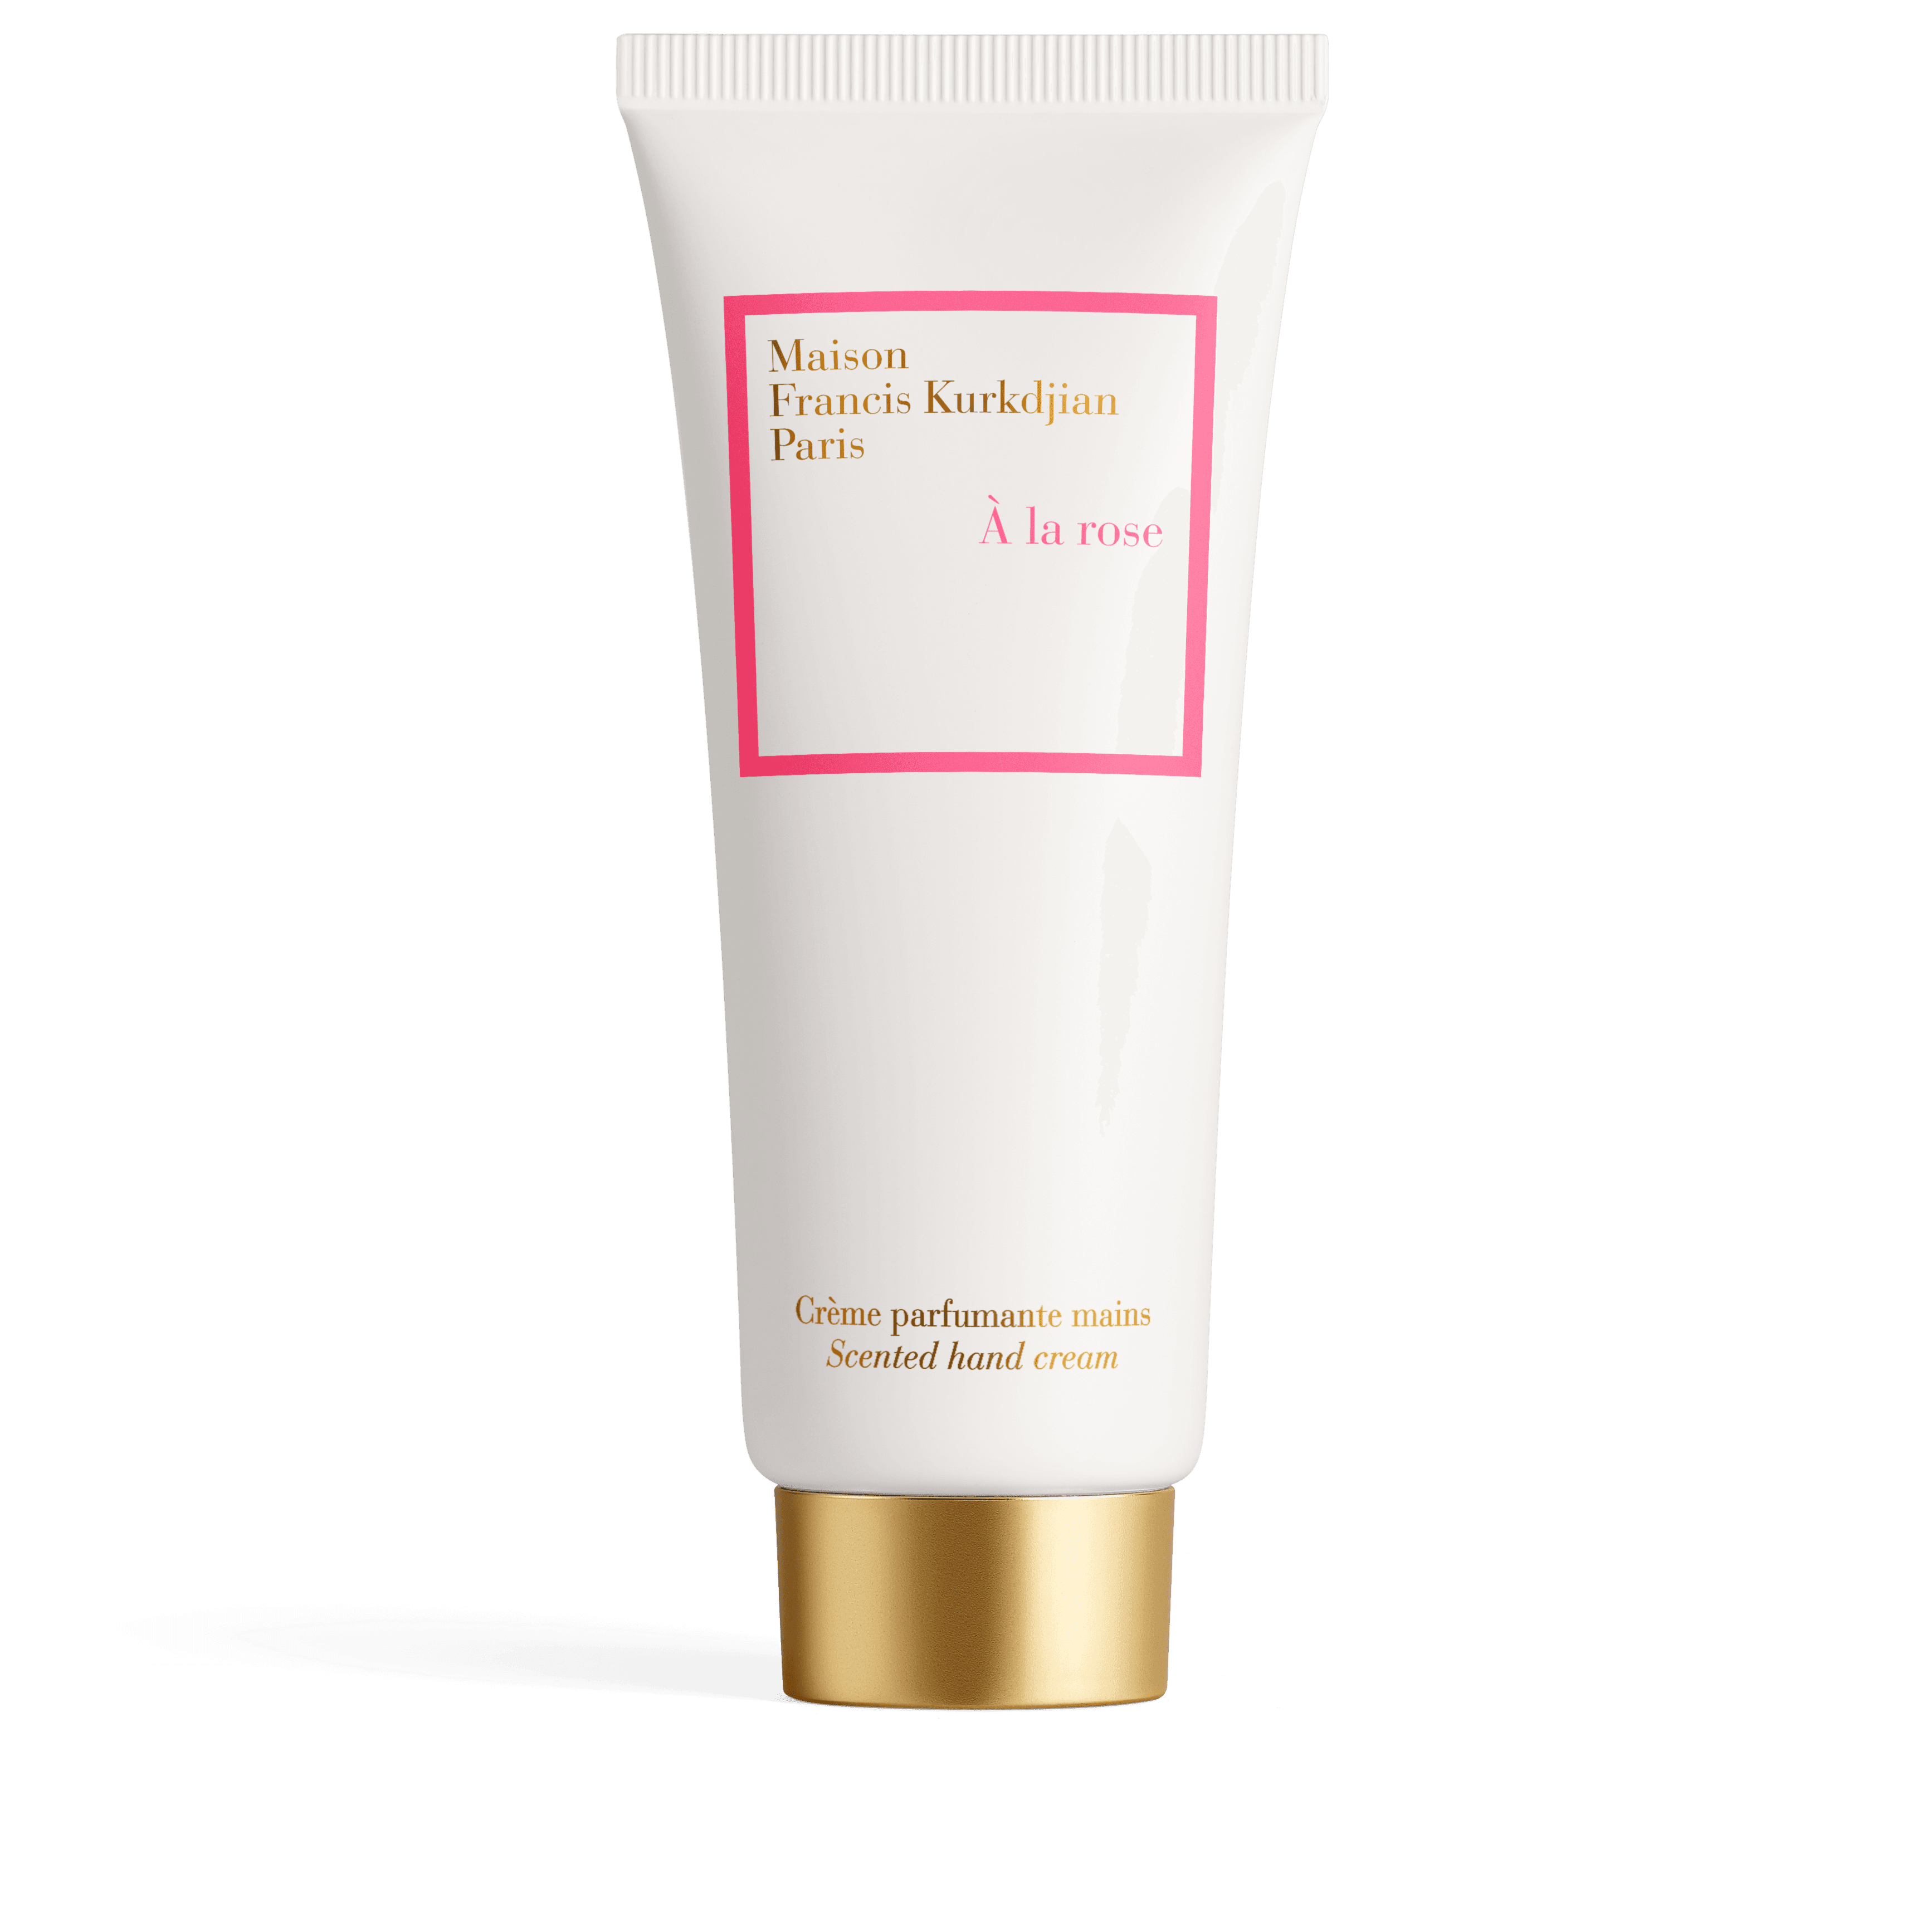 Maison Francis Kurkdjian - A la rose hand cream | Perfume Lounge